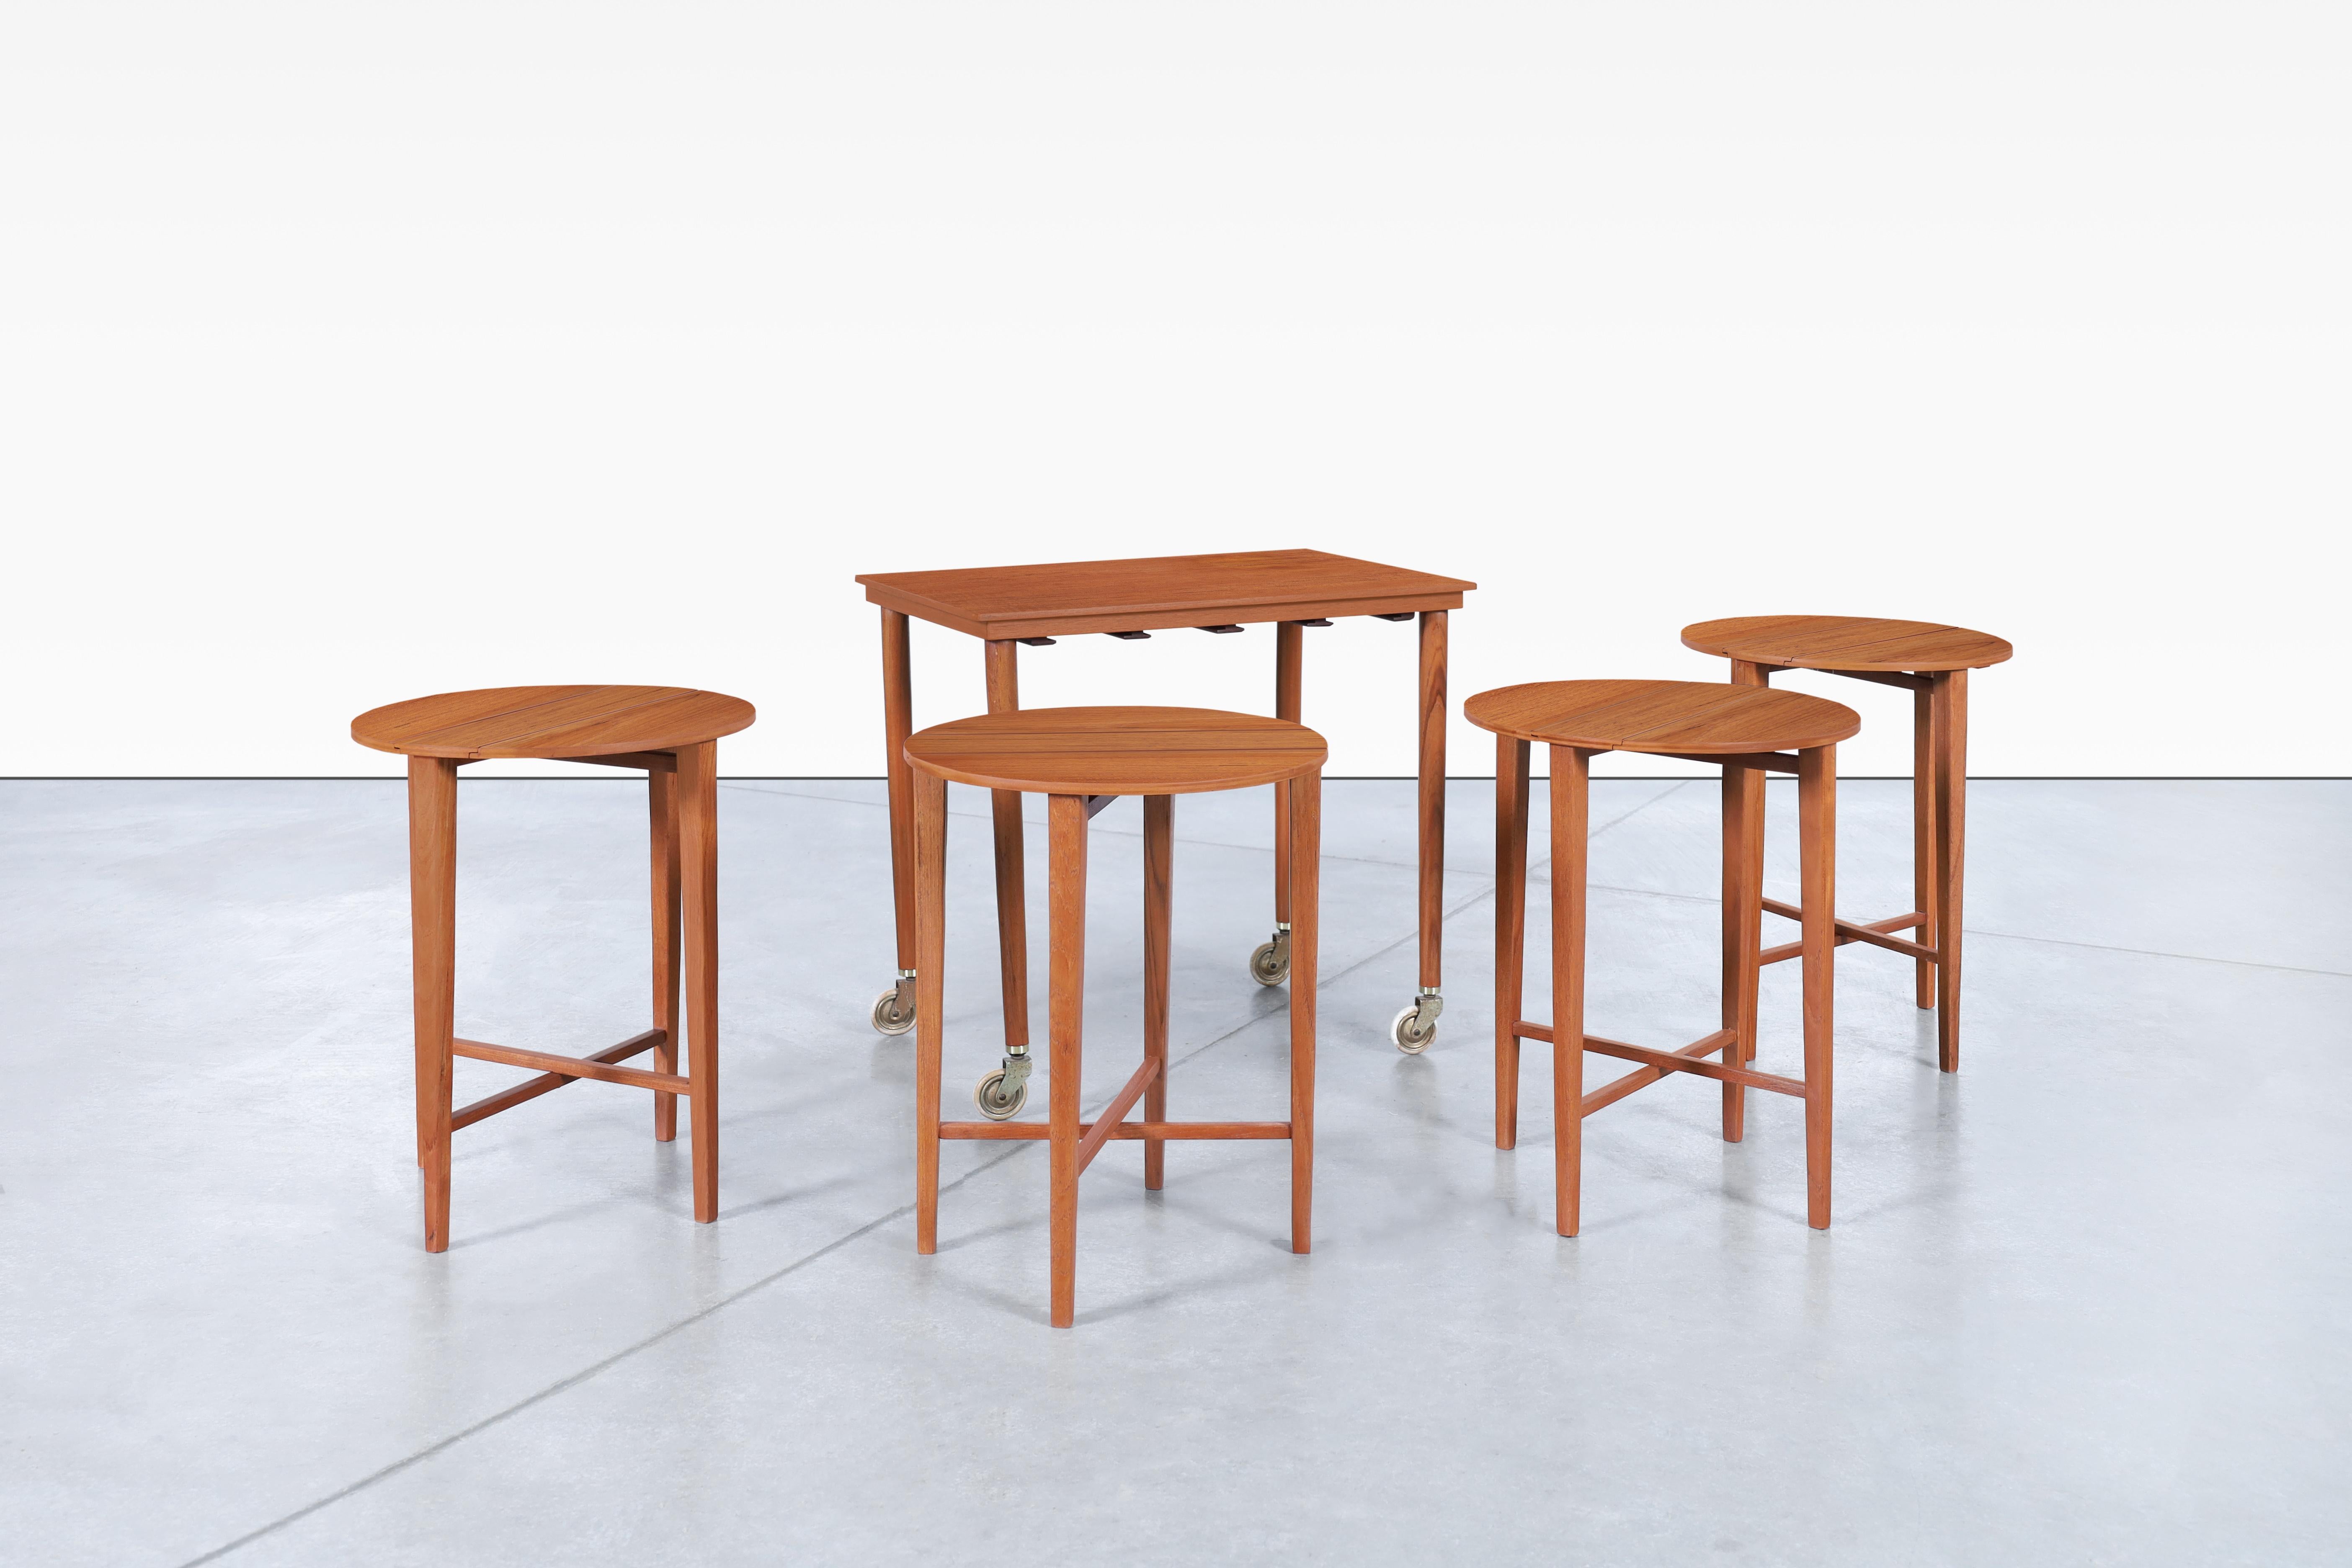 Magnifique table gigogne moderne danoise en teck, conçue par Carlo Jensen pour Poul Hundevad au Danemark, vers les années 1960. Fabriquée à la main avec un plateau en teck, des pieds en hêtre et des accents métalliques, cette pièce remise à neuf